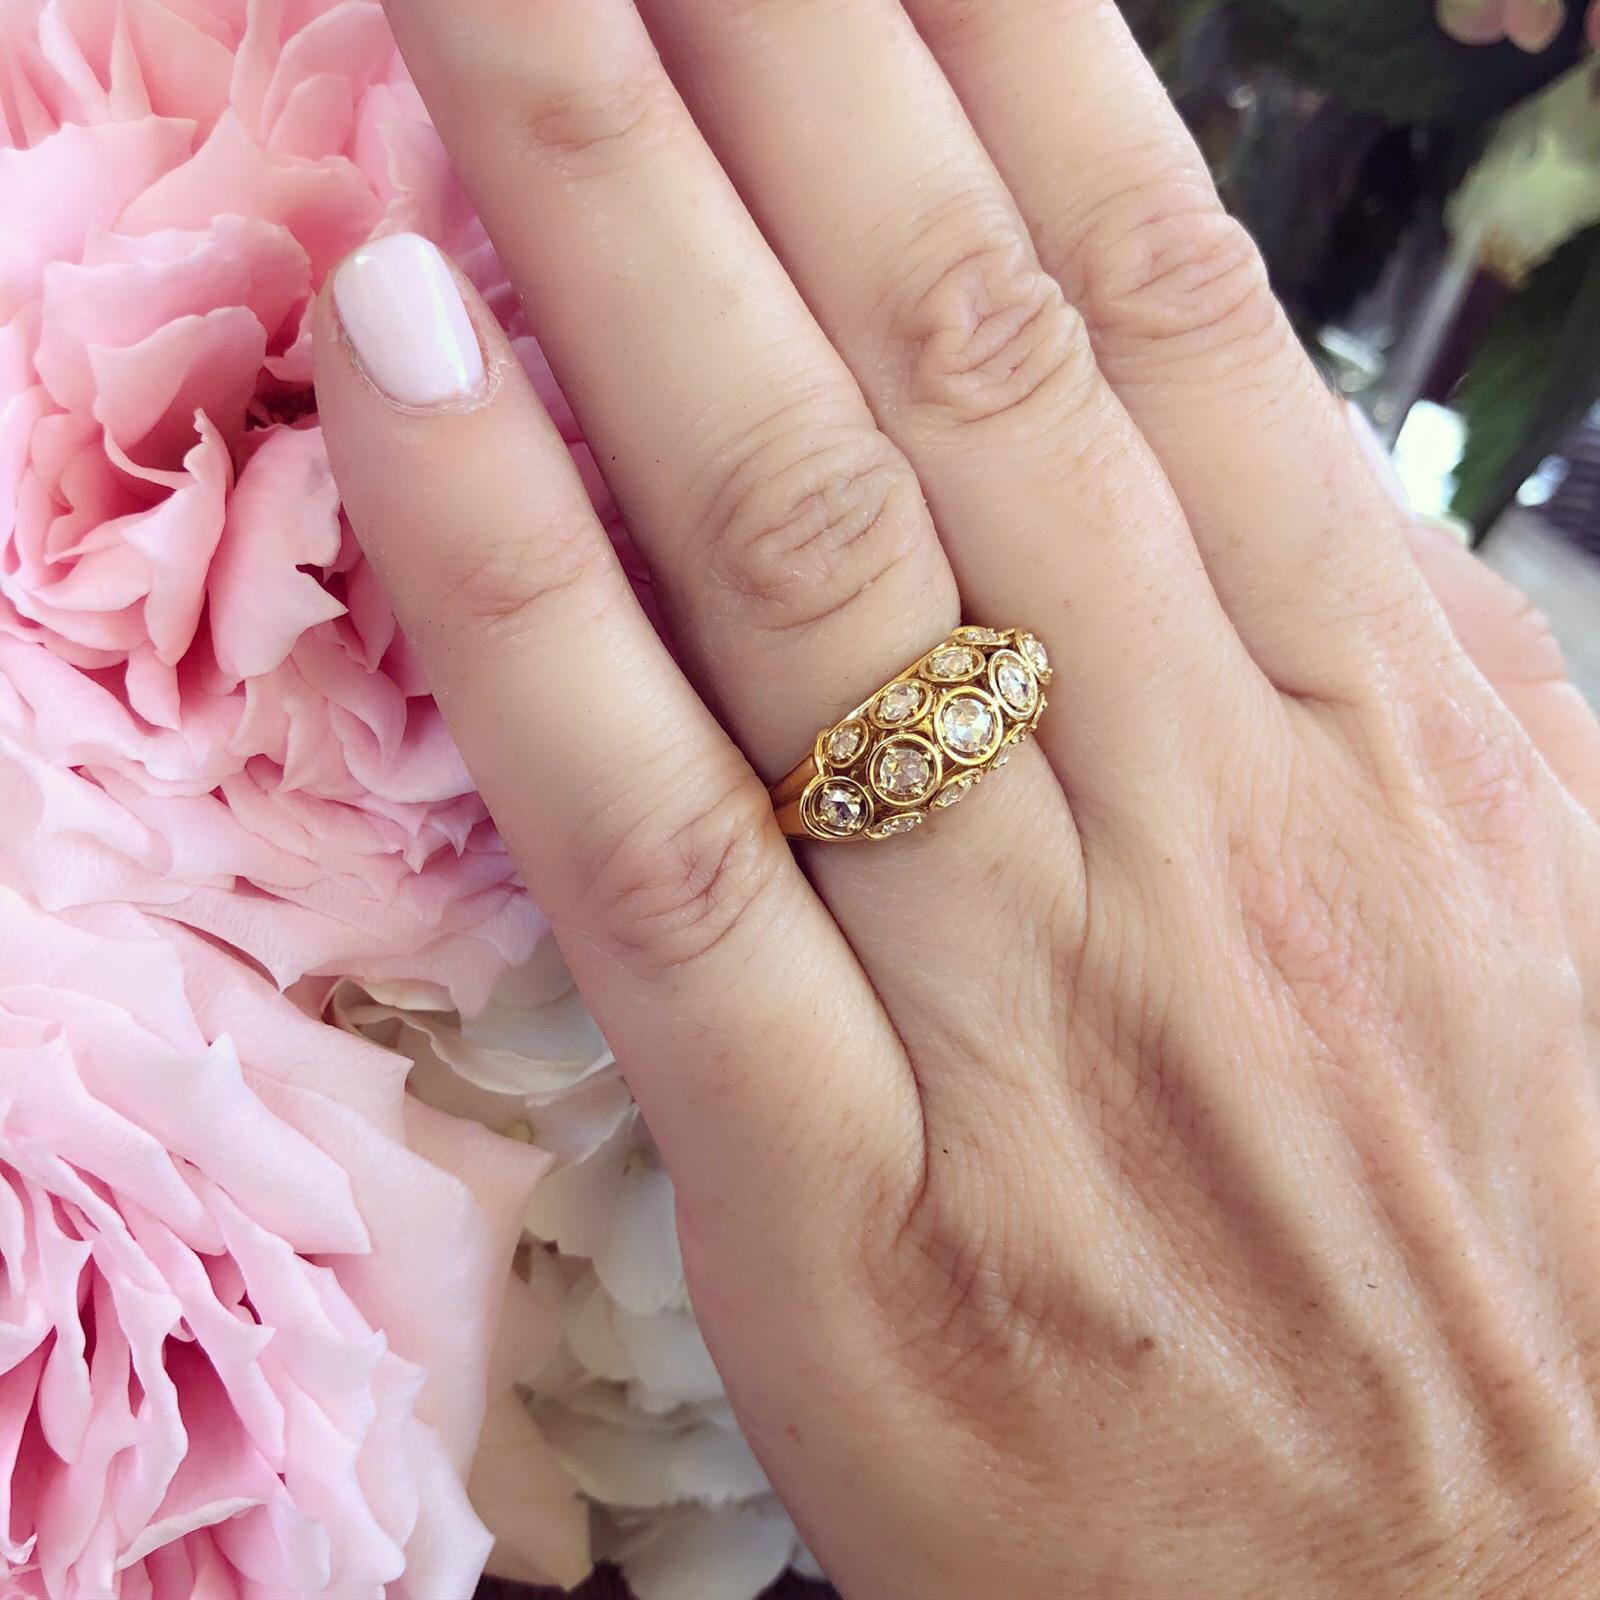 Dieser einzigartige Ring aus 18 Karat Gold, entworfen von der berühmten Designerin Marina B. aus der einzigartigen Bulgari-Familie, wird Ihr nächstes Lieblingsstück werden! Das offene, gewölbte Design ist mit 13 Diamanten im Rosenschliff mit einem